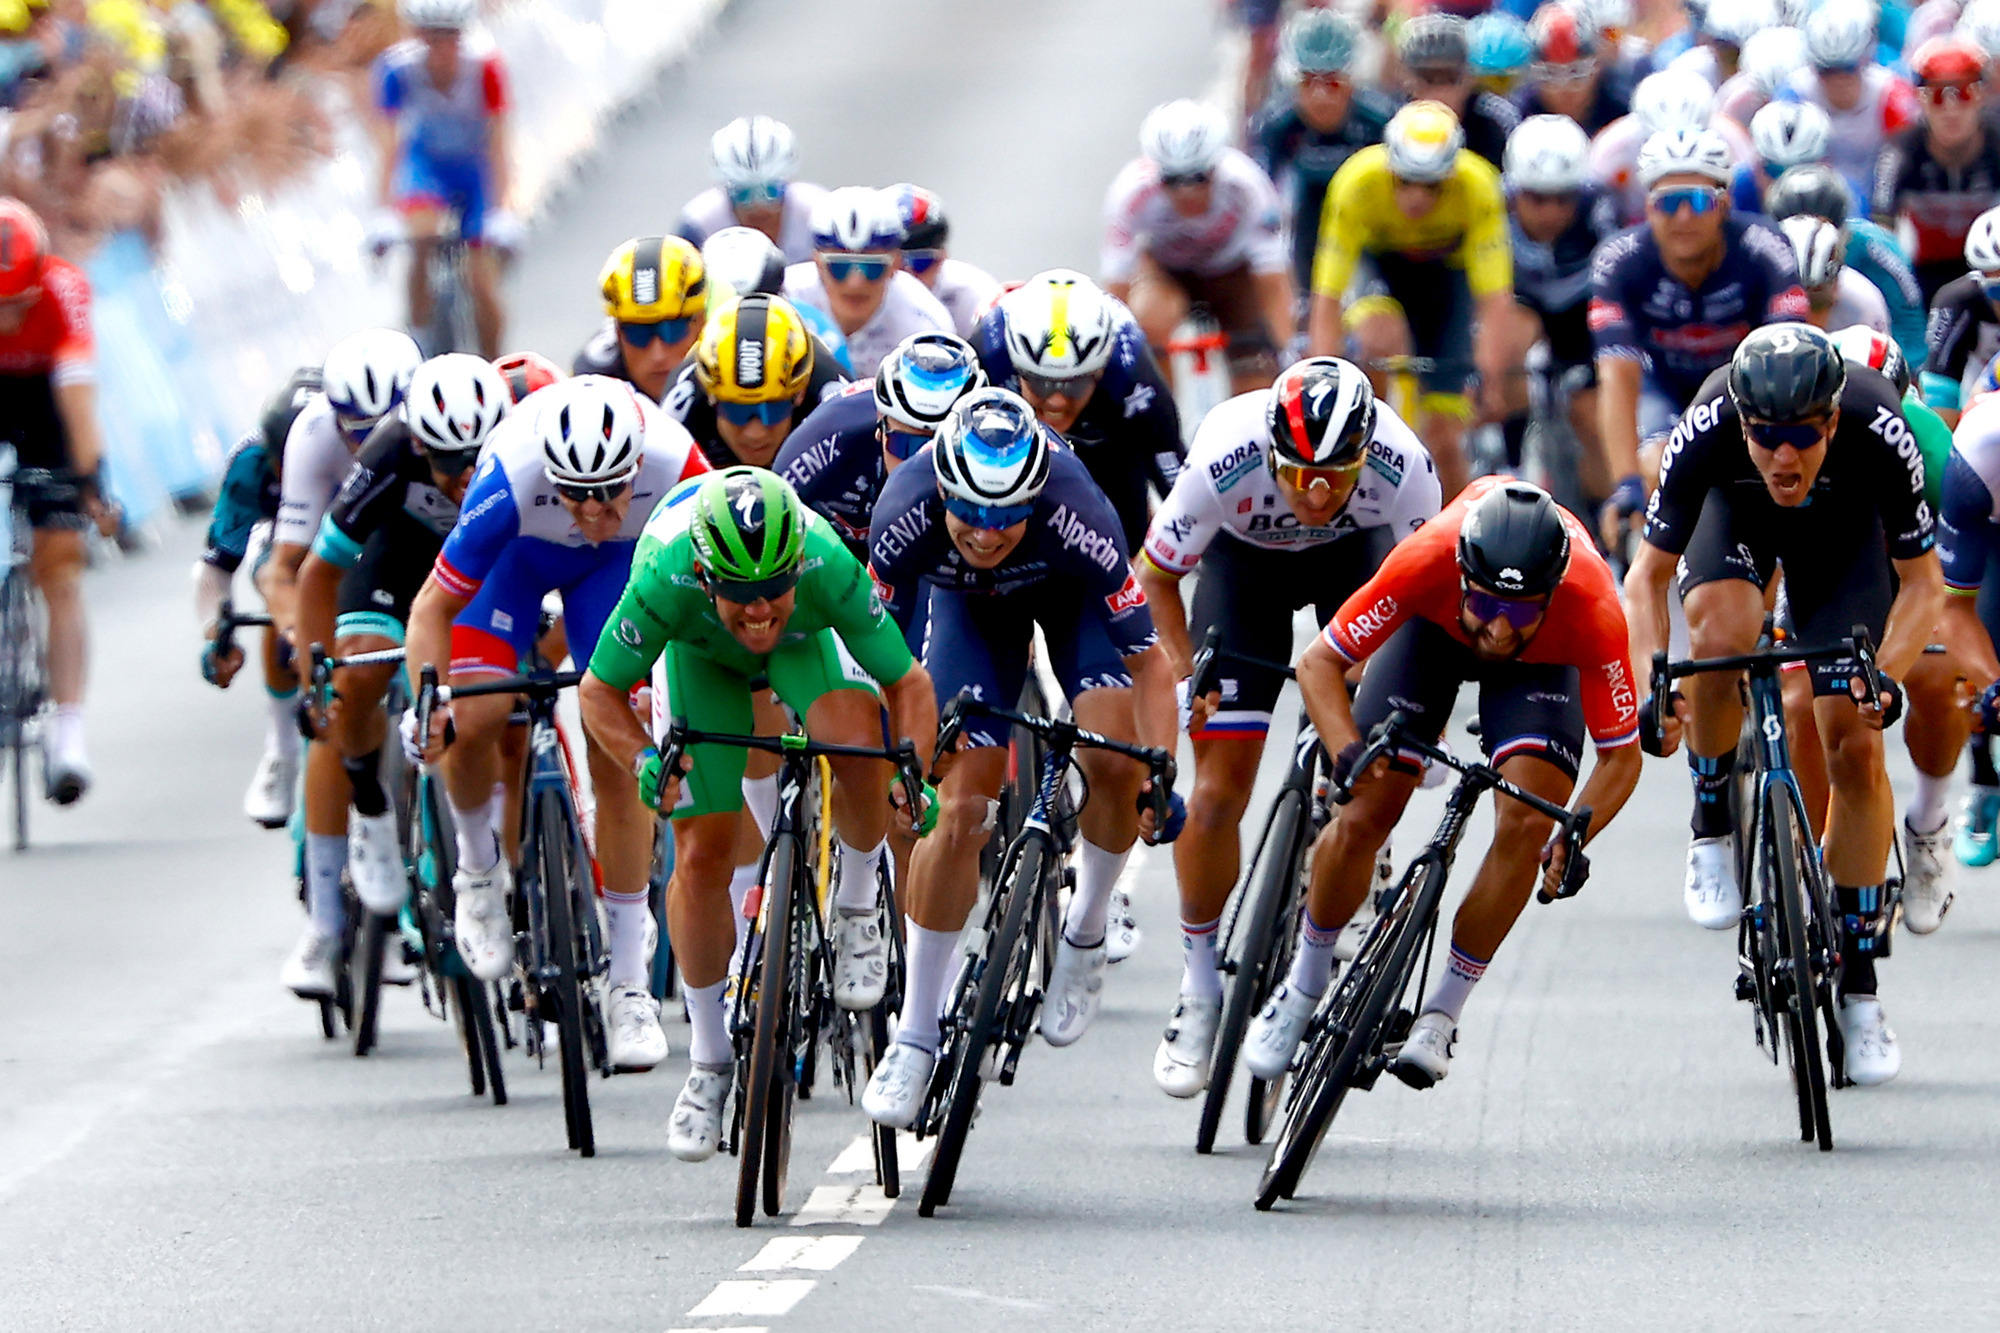 El consistente Bouhanni gana otro podio en el Tour de Francia